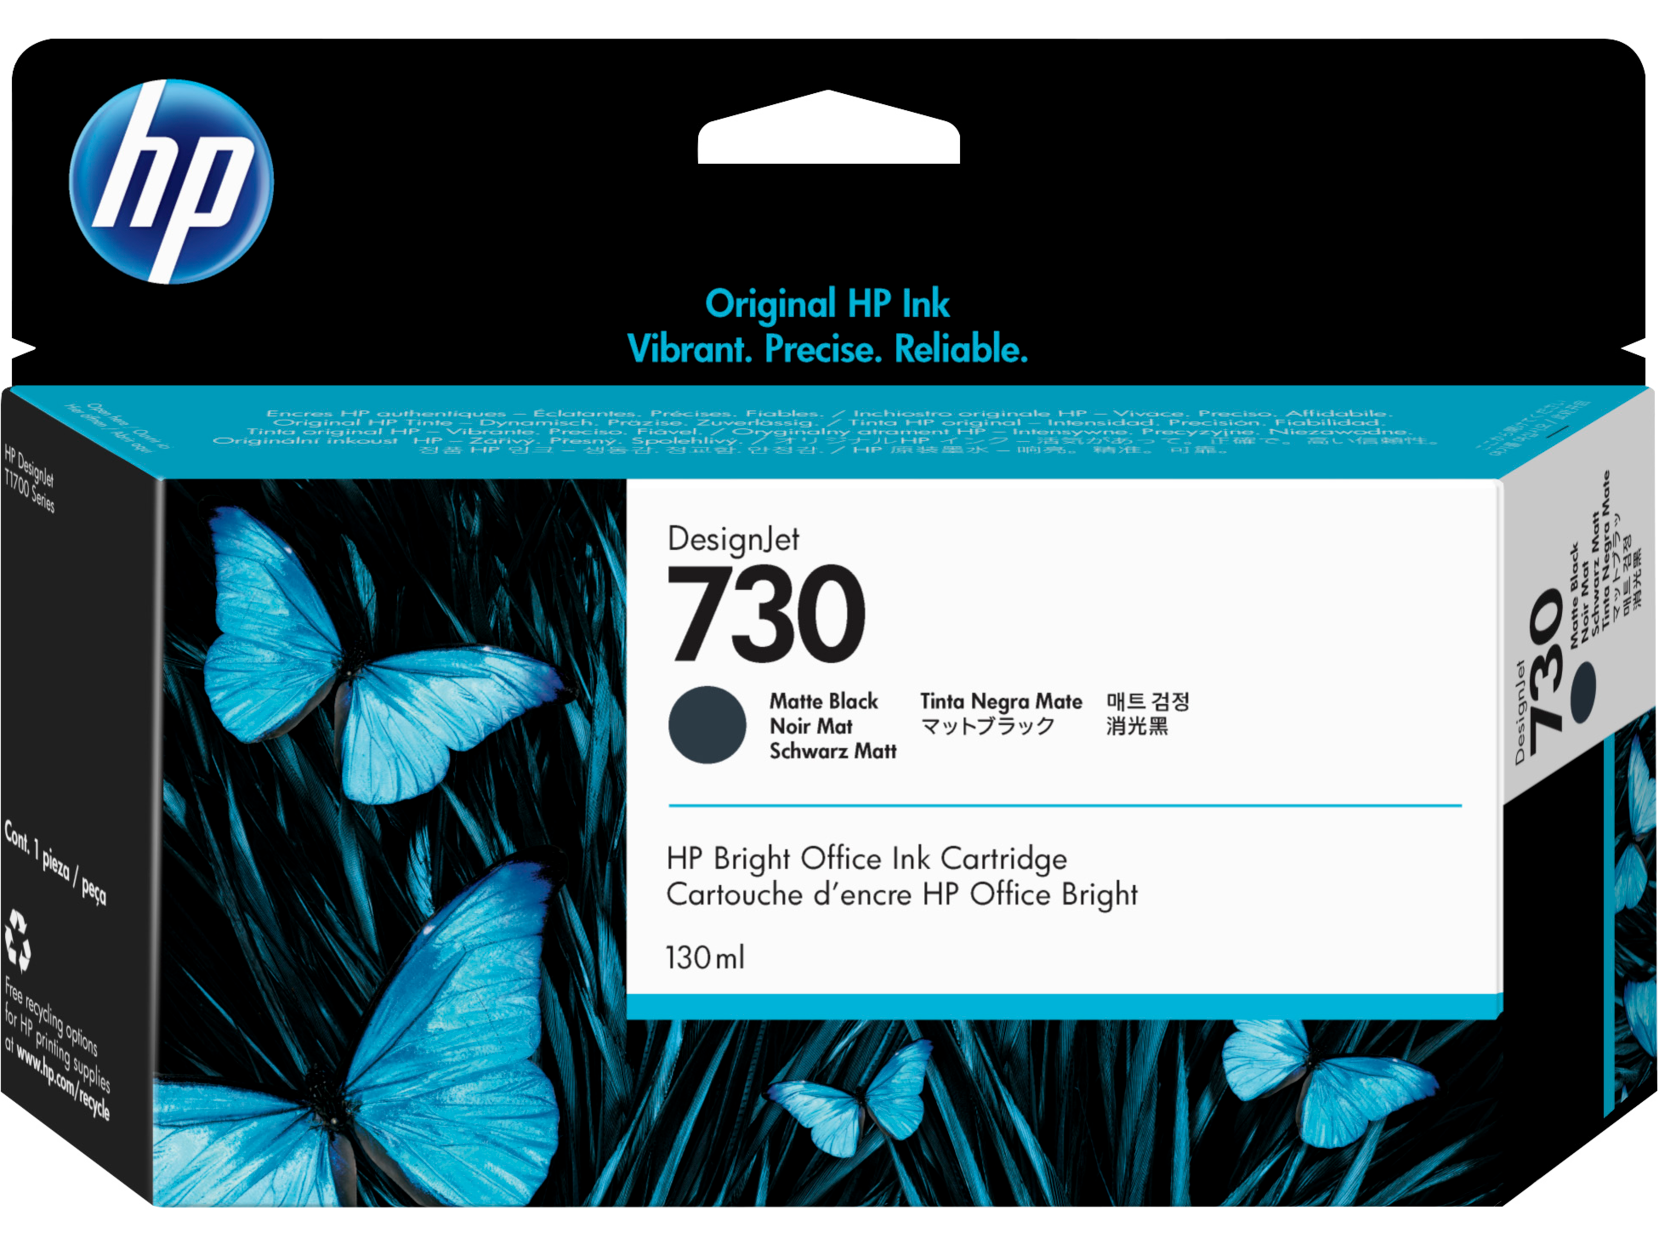 Картридж для печати HP Картридж HP 730 P2V65A вид печати струйный, цвет Черный матовый, емкость 130мл.